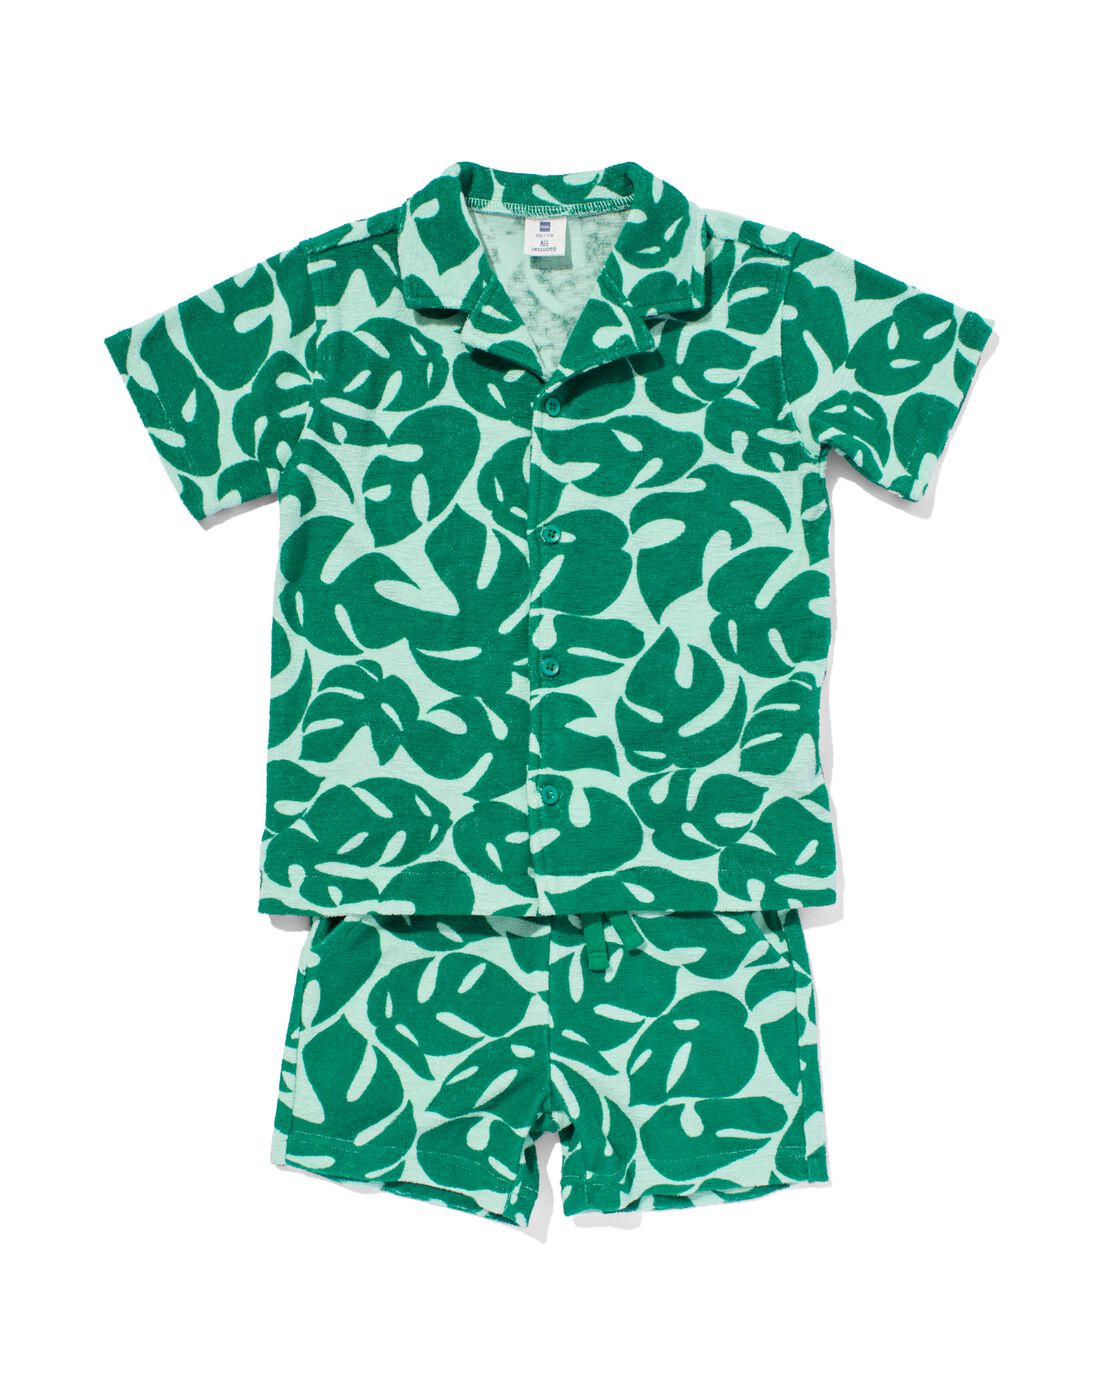 HEMA Kinder Kledingset Overhemd En Short Badstof Bladeren Groen (groen)